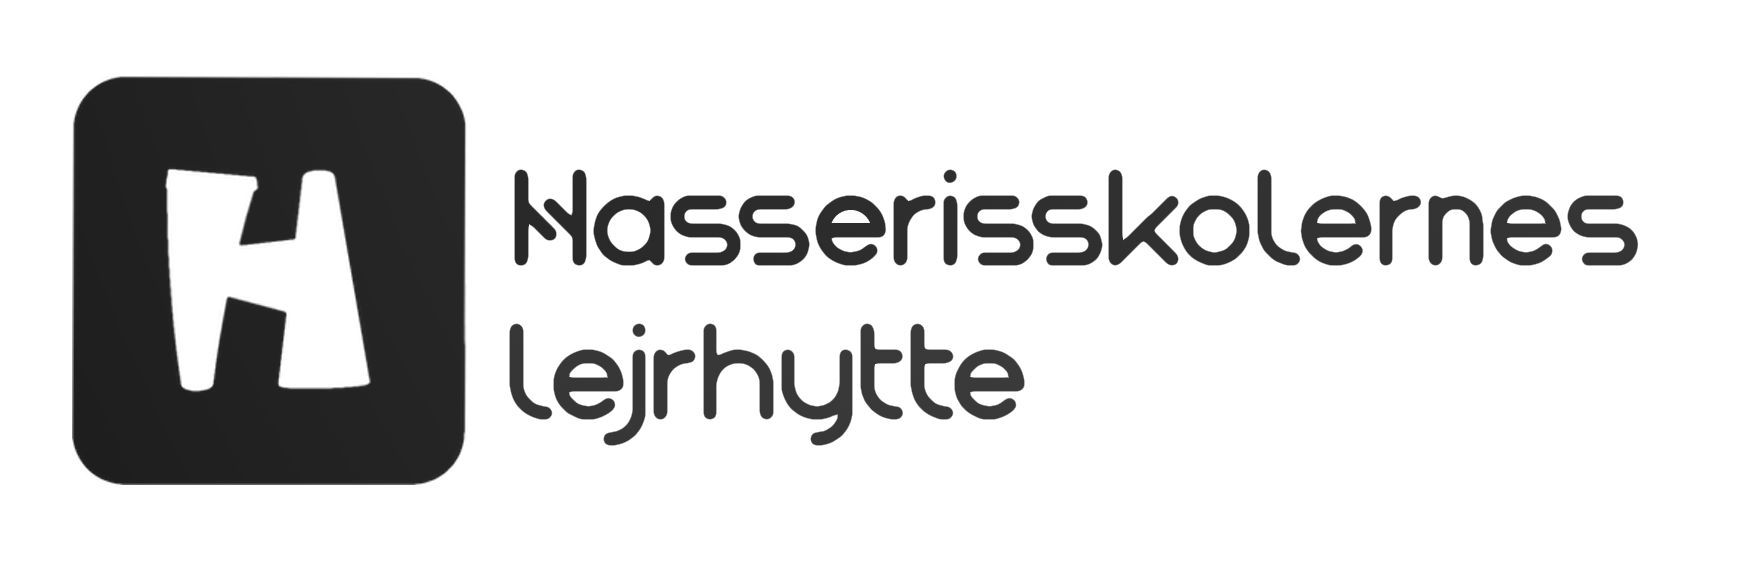 Hasserisskolernes Lejrhytte Logo